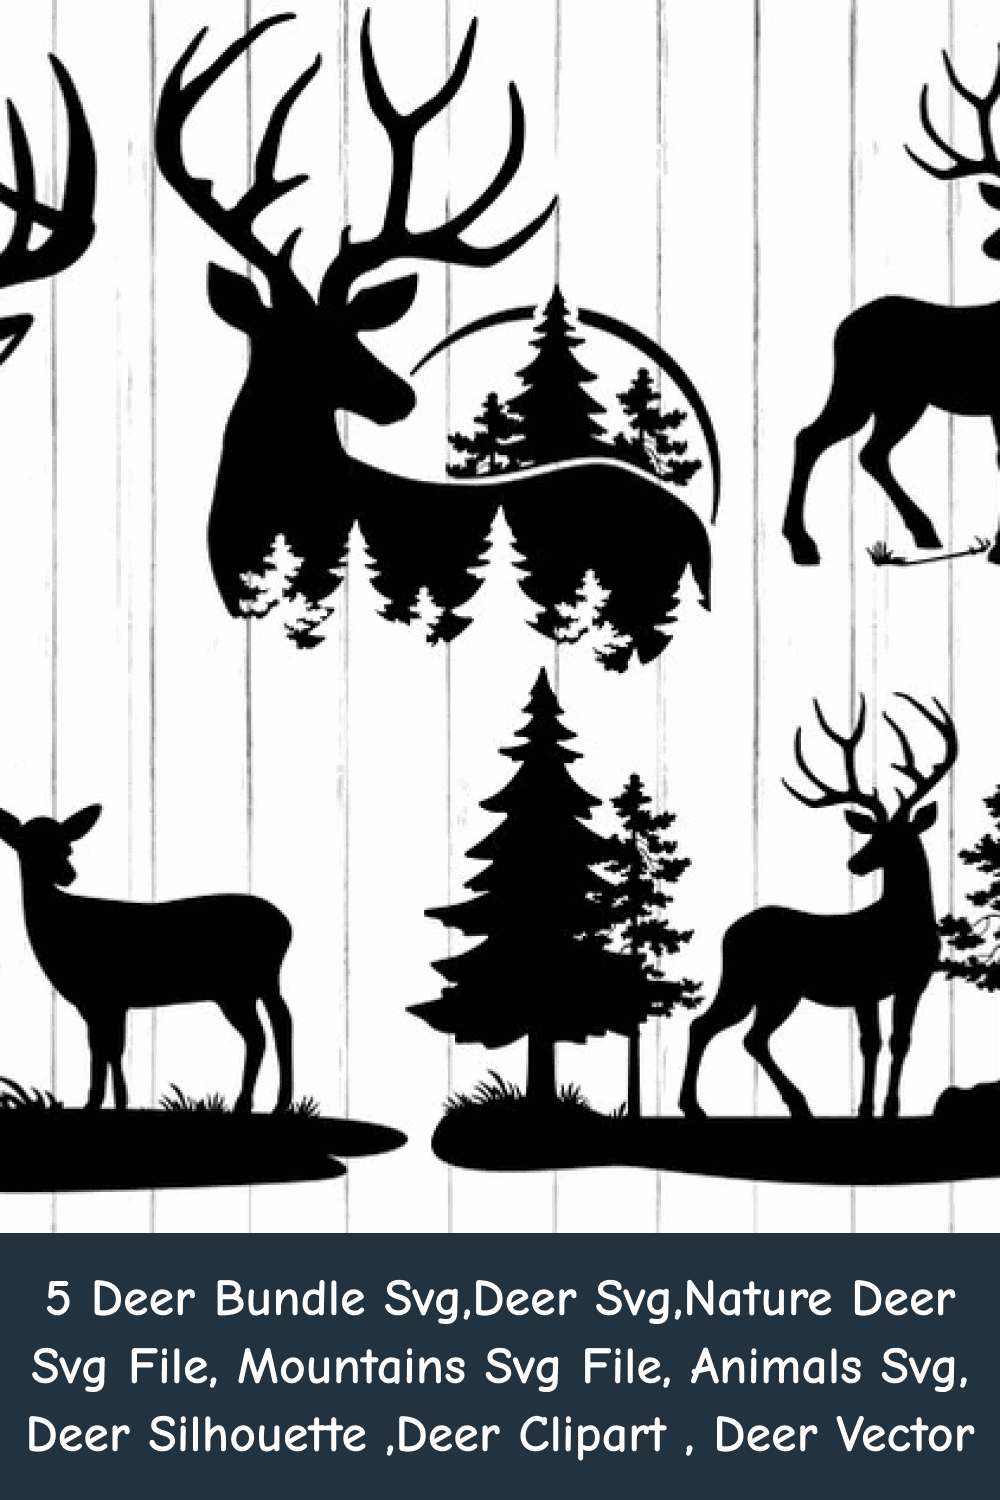 Nature Deer SVG File.